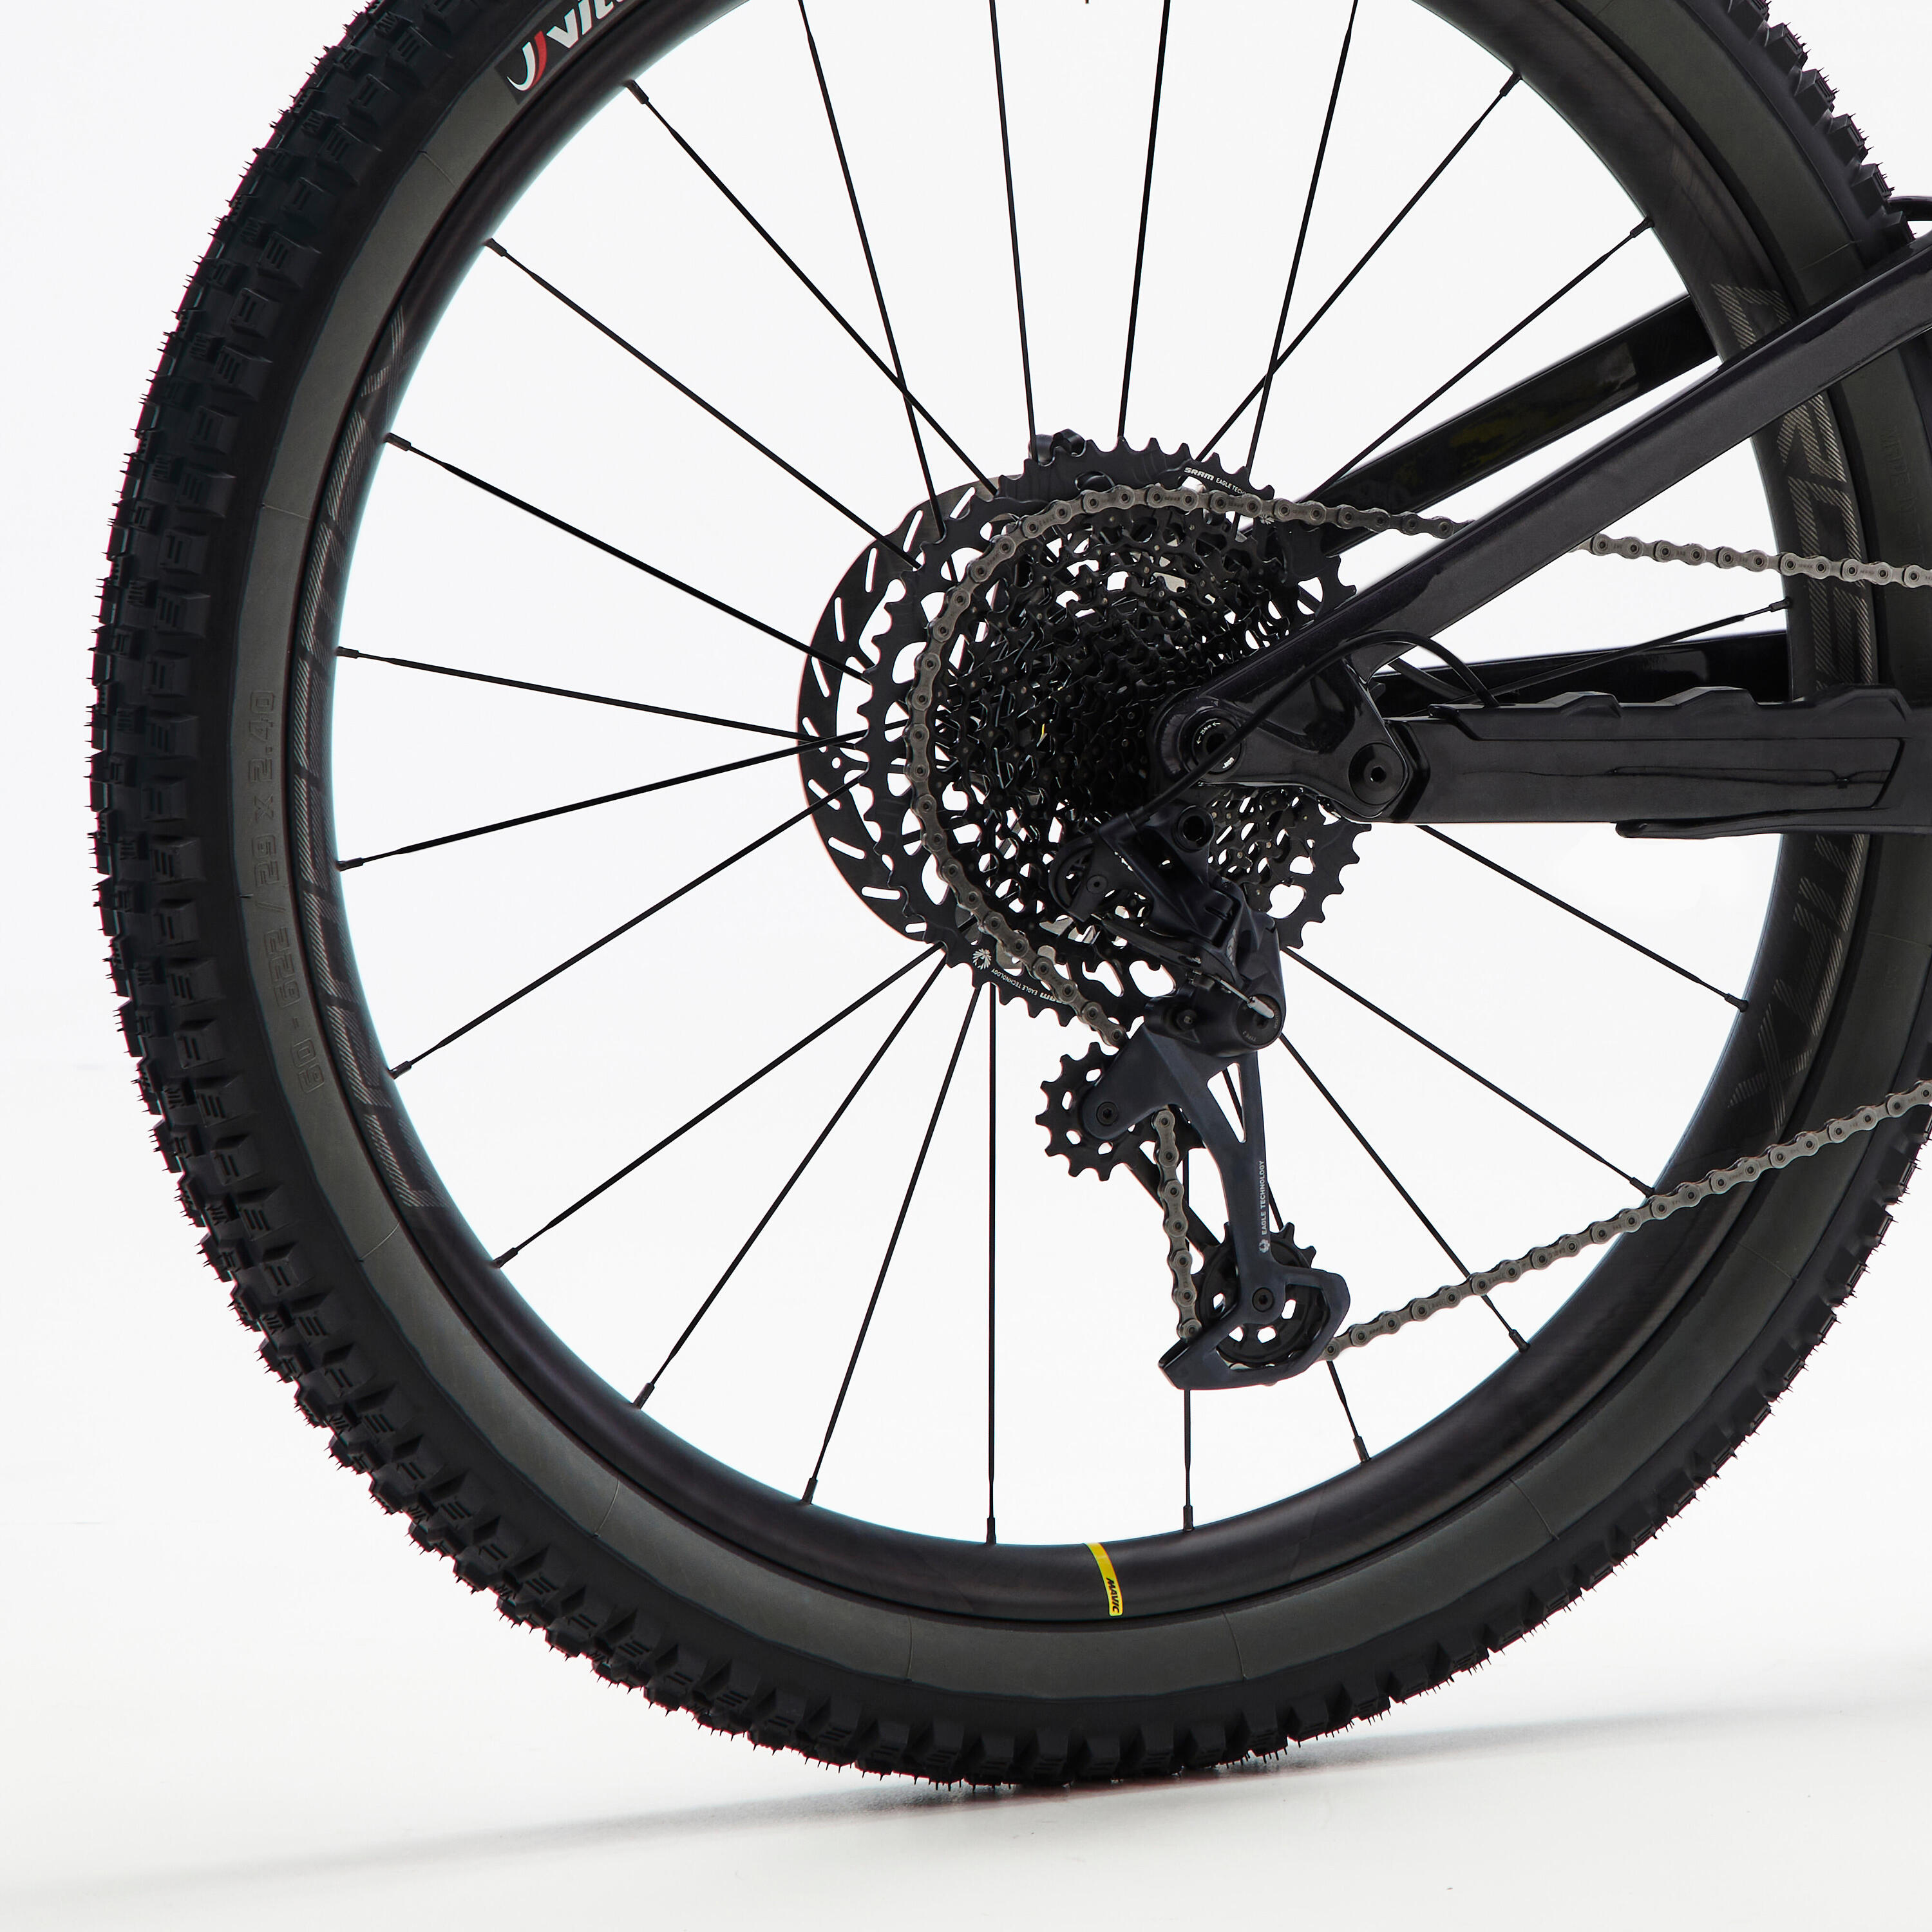 Carbon frame, adjustable suspension mountain bike, black 10/11